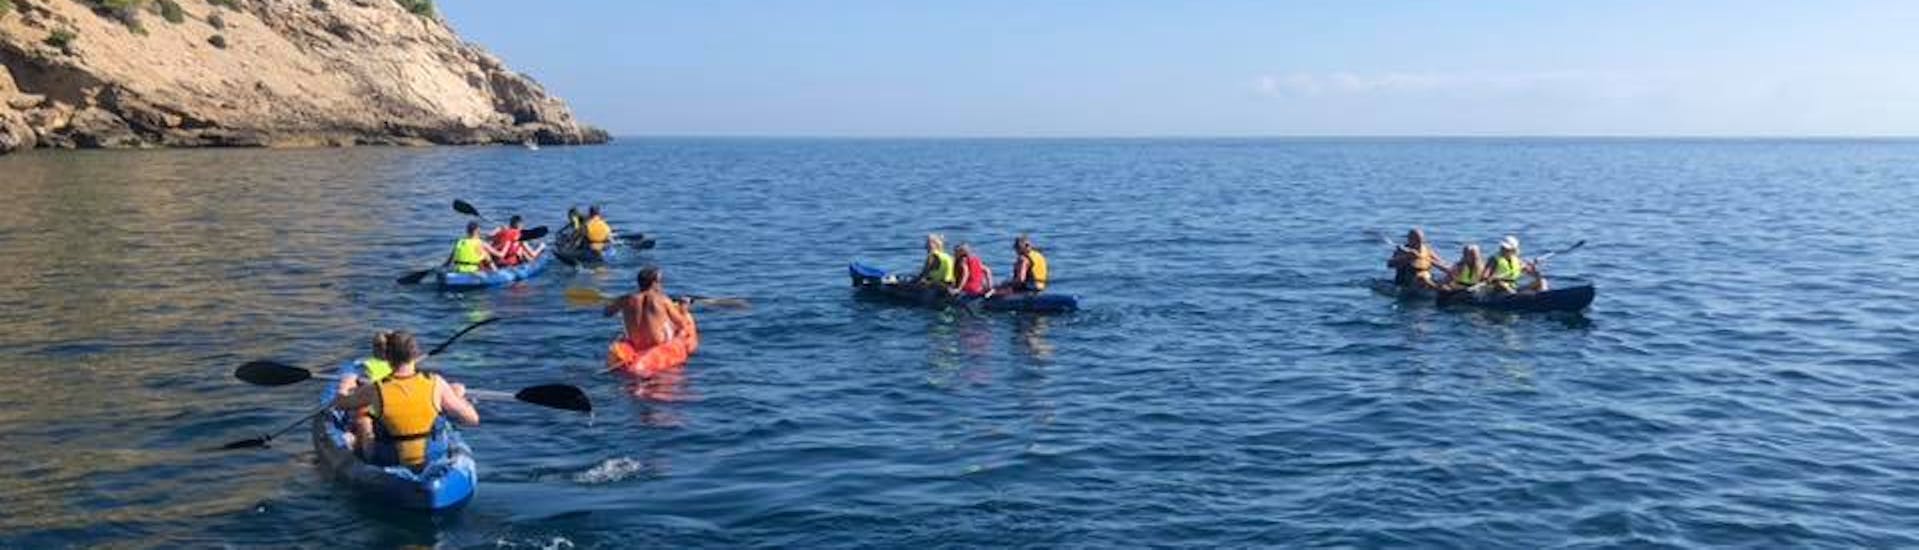 Les participants pagayant sur la baie d'Alcudia lors d'une balade en kayak avec North Coast Adventure Mallorca.